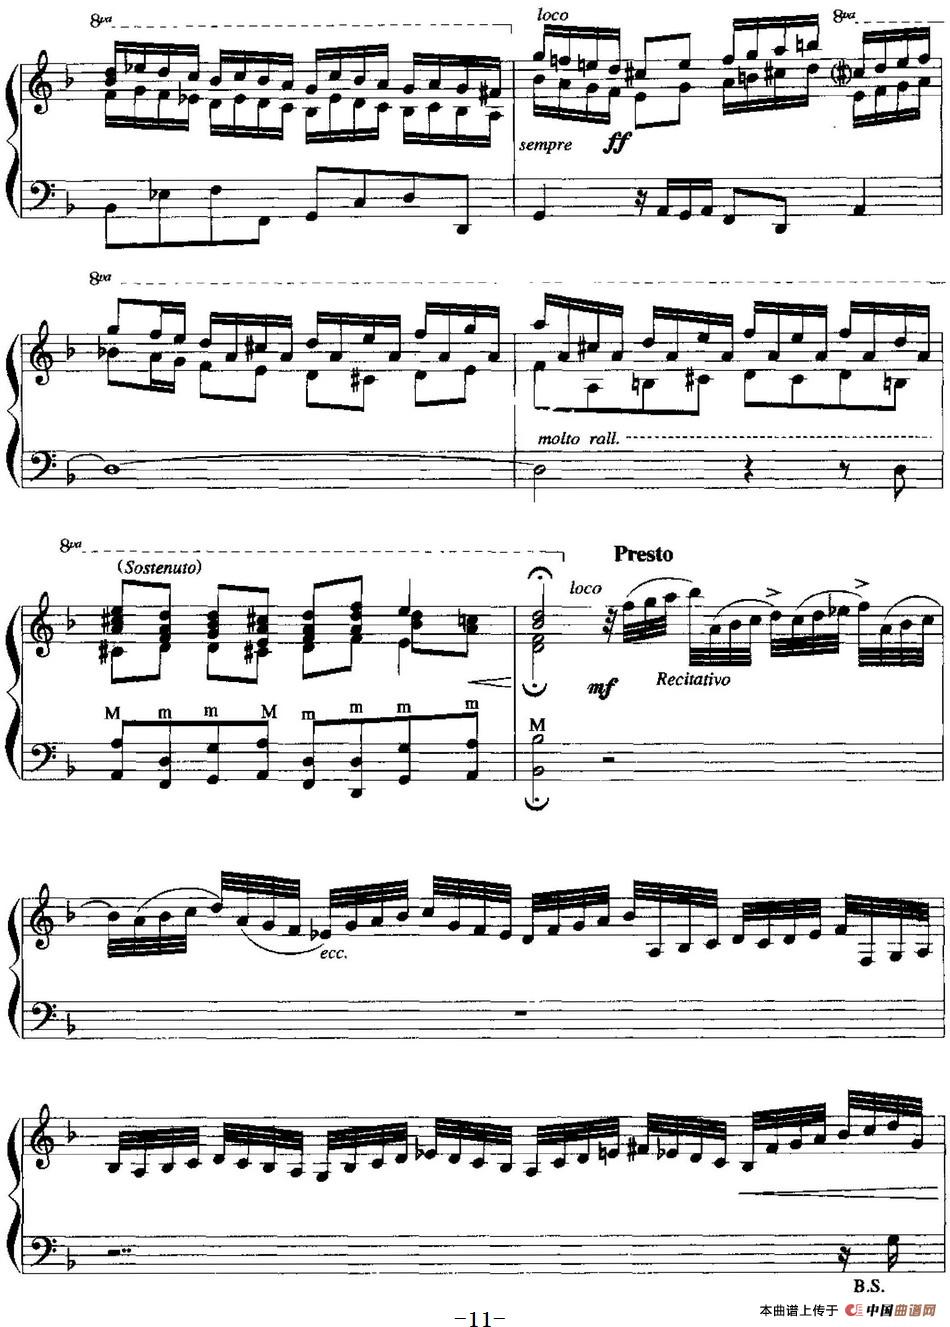 手风琴复调作品：d小调托卡塔与赋格